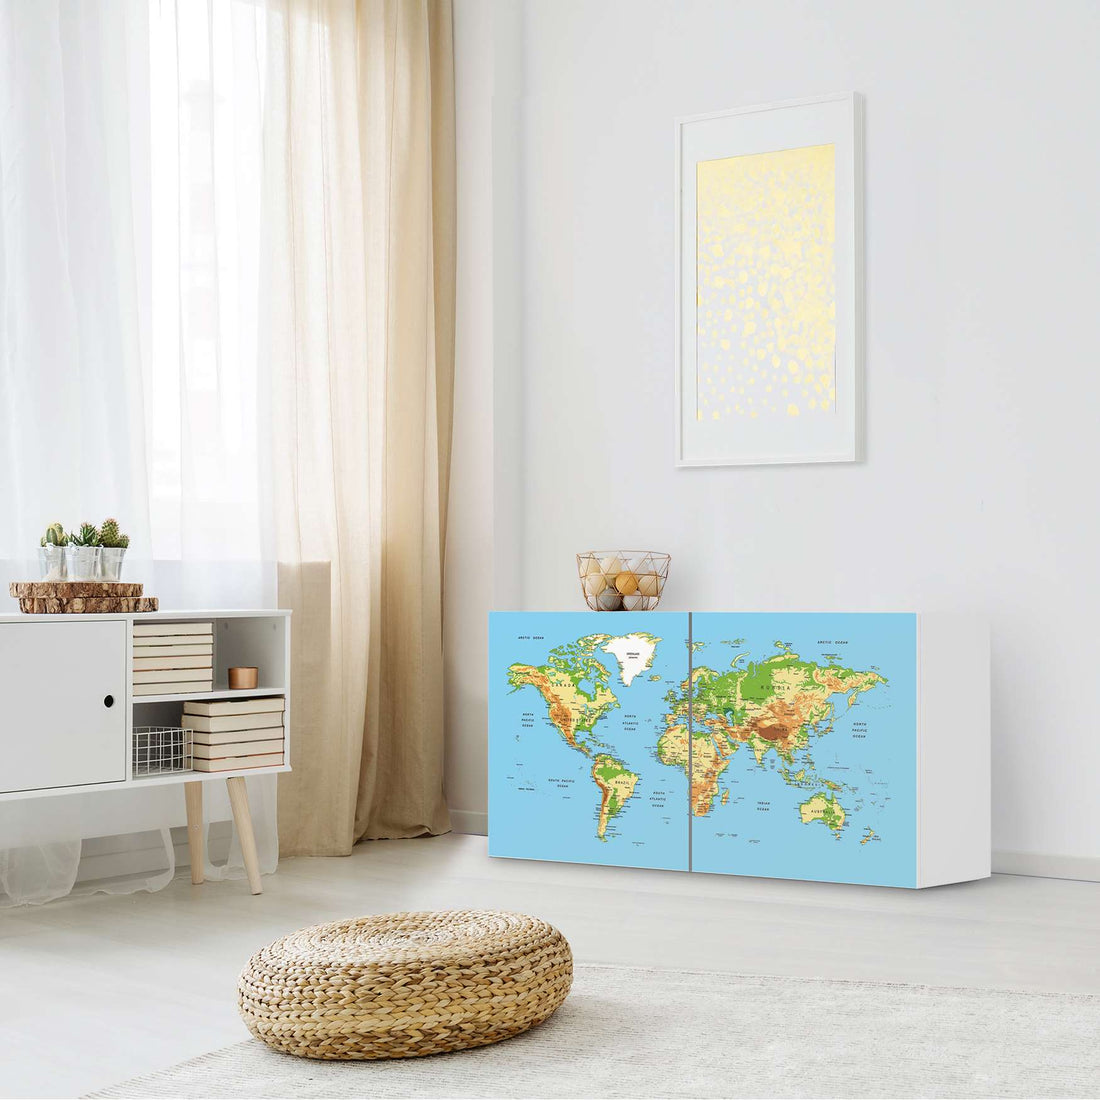 Folie für Möbel Geografische Weltkarte - IKEA Besta Regal Quer 2 Türen - Wohnzimmer